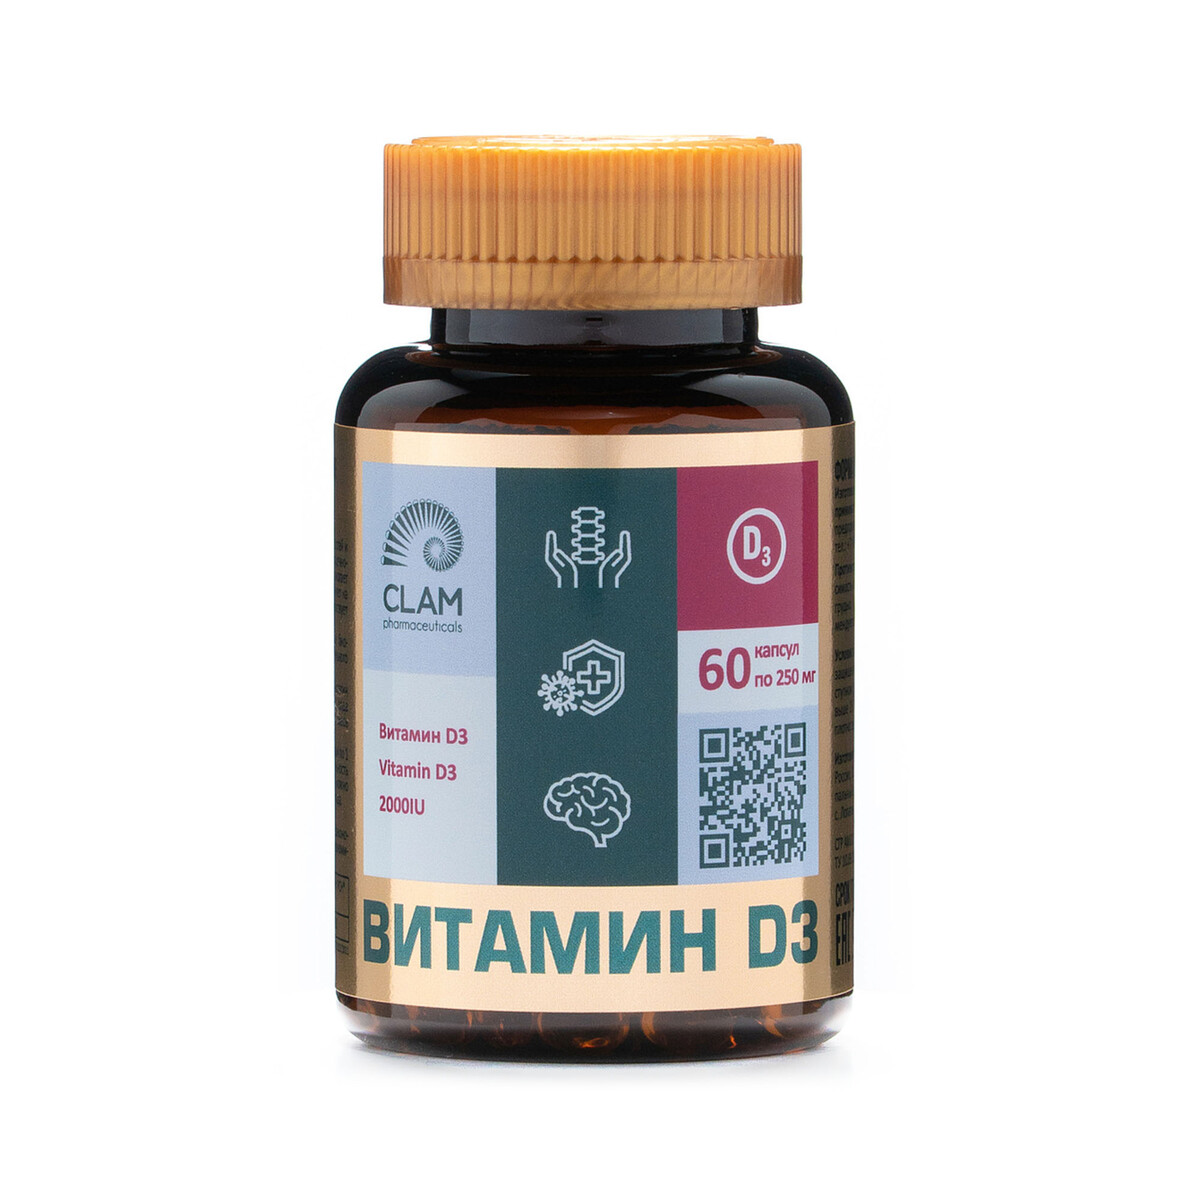 Витамин d3 2000ме - anti age, источник витаминов и минералов - для имунной системы, костей и суставов - 60 капсул витамин д3 2000ме таб шипучие 3 8г 20